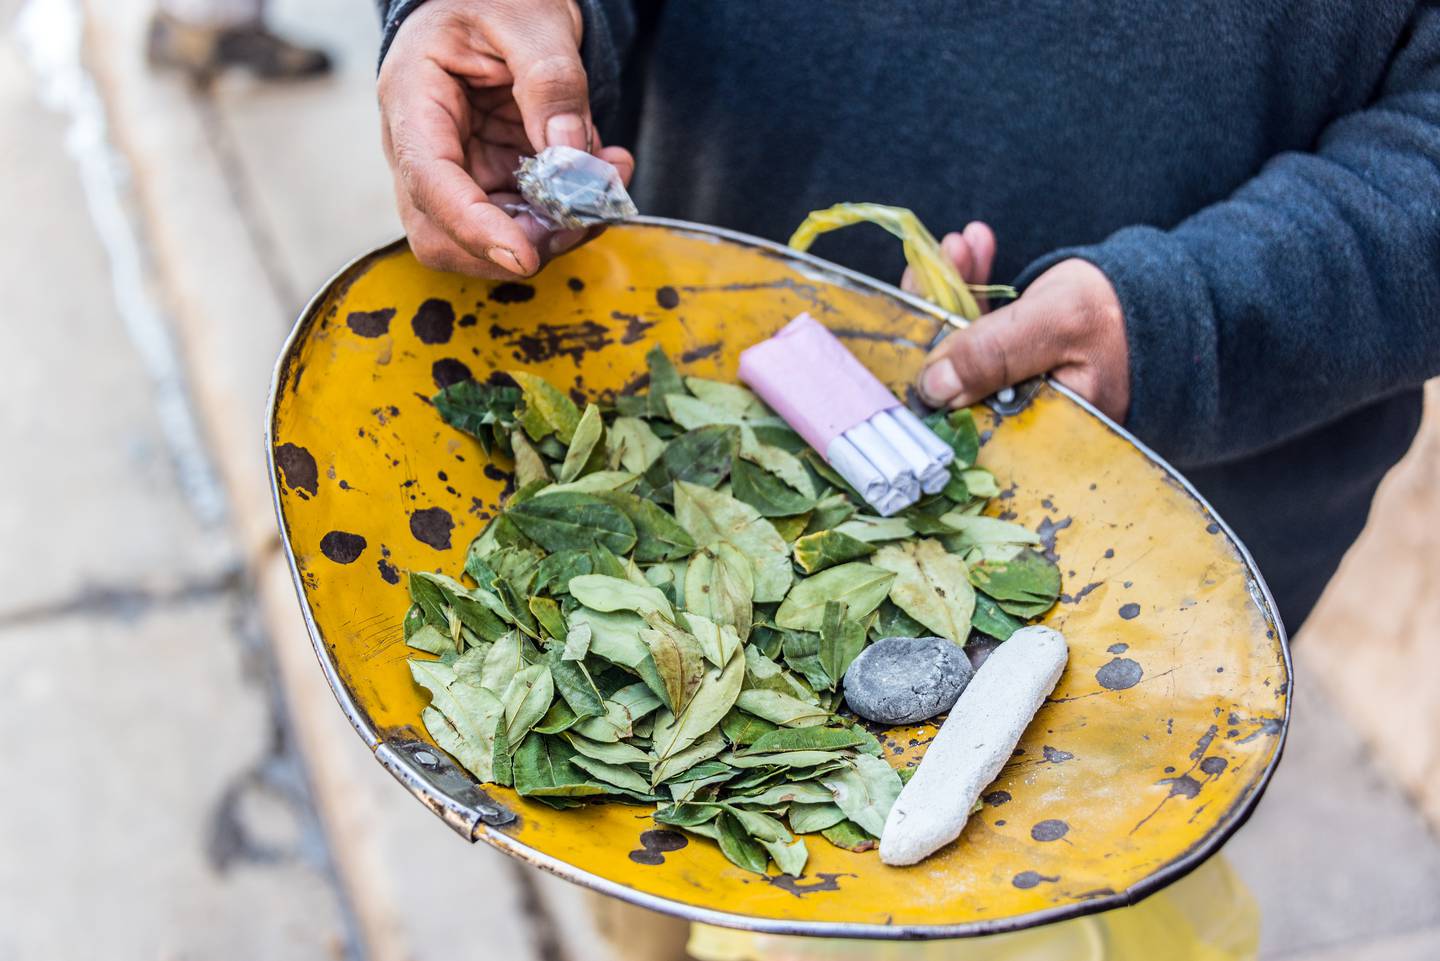 La producción de hoja de coca para uso tradicional de masticado llamado pijcheo es legal en Bolivia, pero un gran porcentaje de la hoja que se siembra termina en el mercado ilegal.